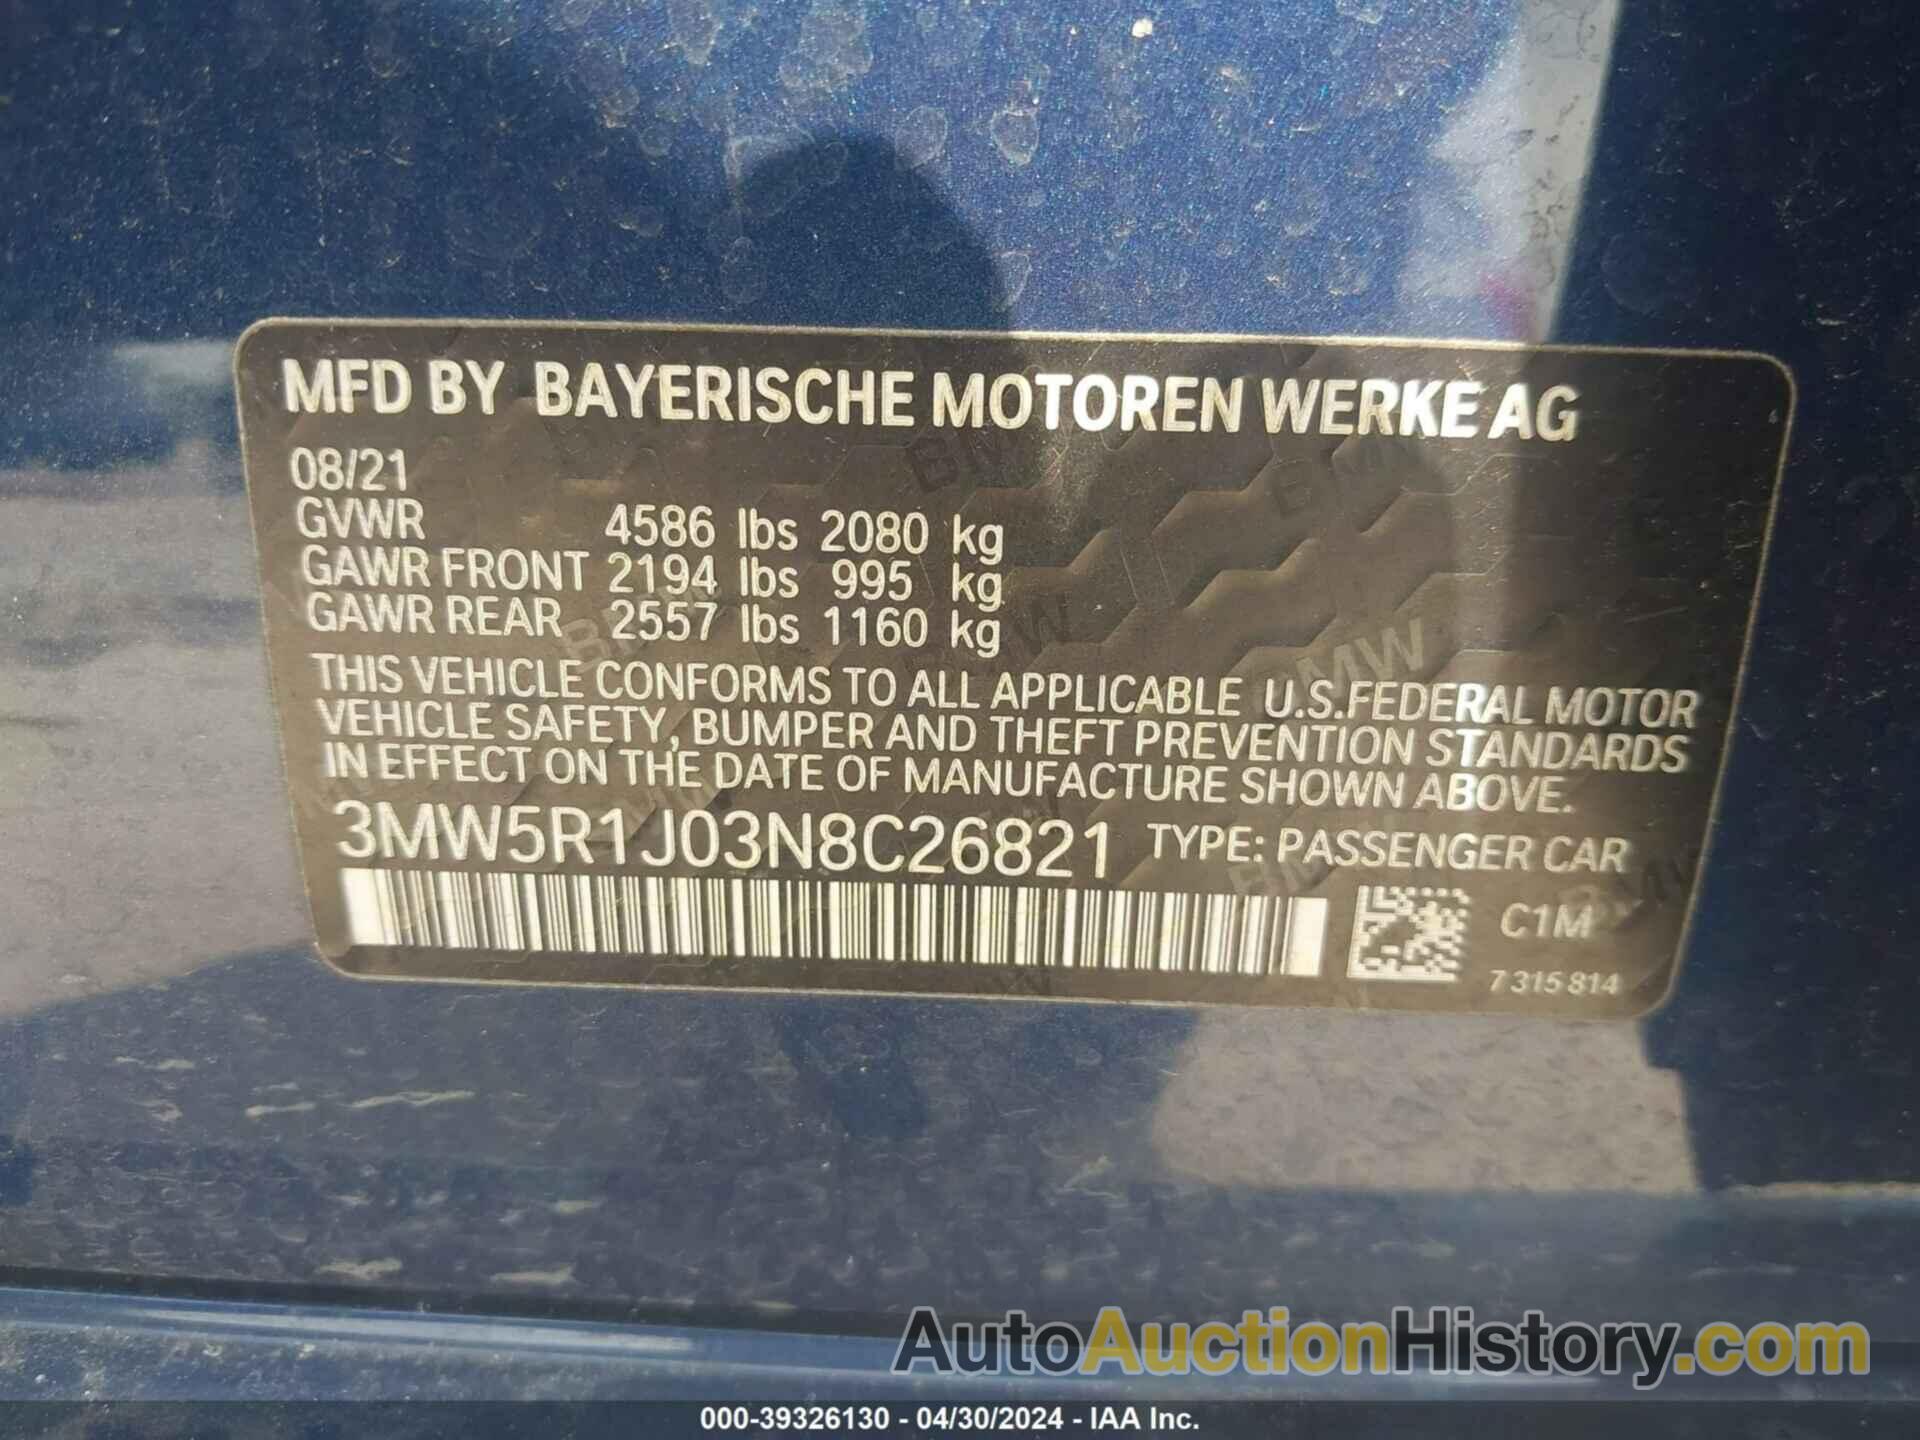 BMW 330I, 3MW5R1J03N8C26821